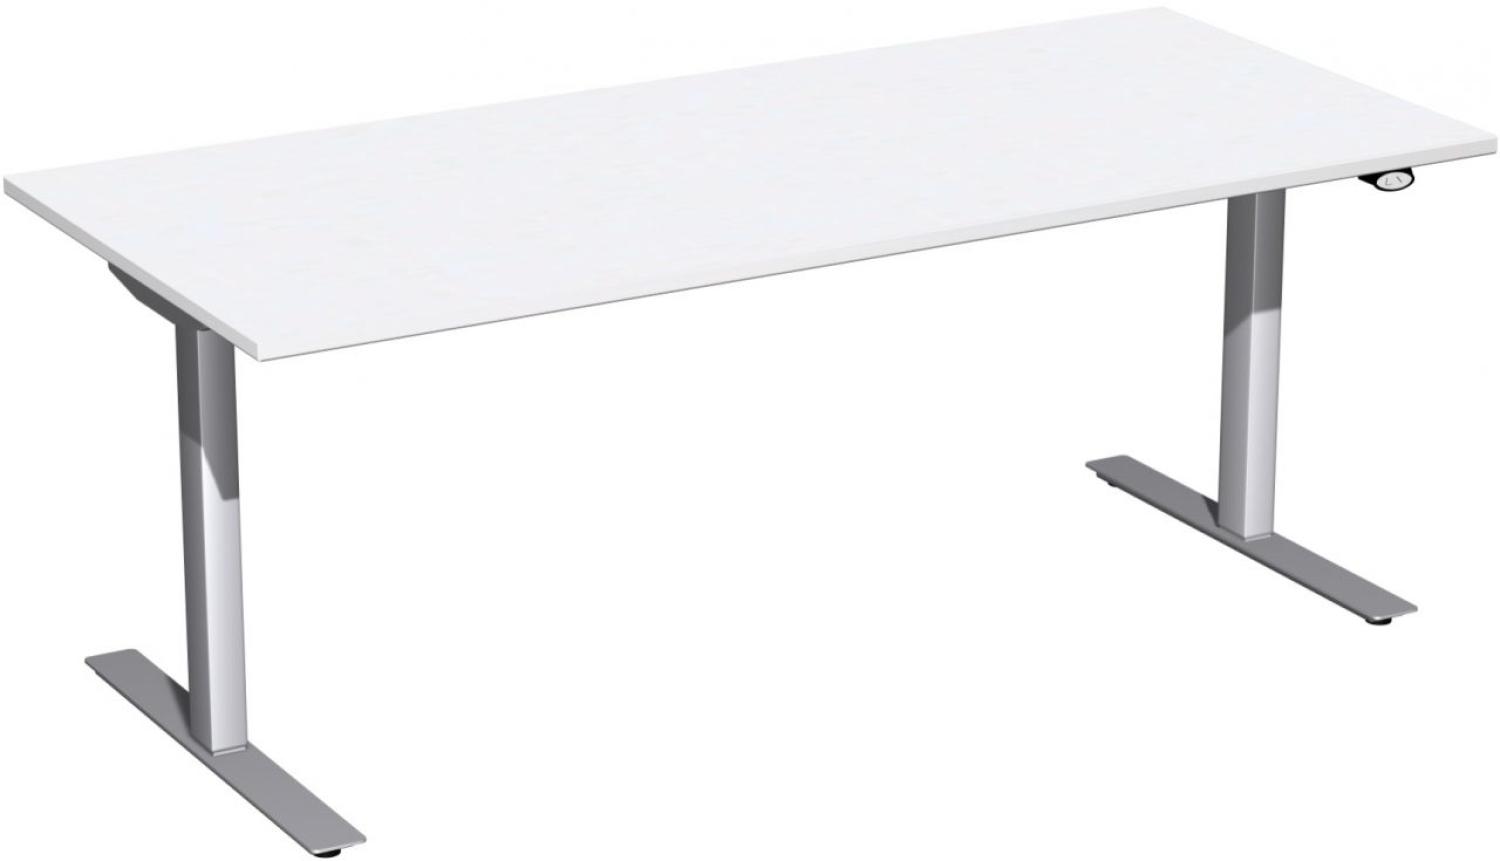 Elektro-Hubtisch 'Flex', höhenverstellbar, 180x80x68-116cm, gerade, Weiß / Silber Bild 1